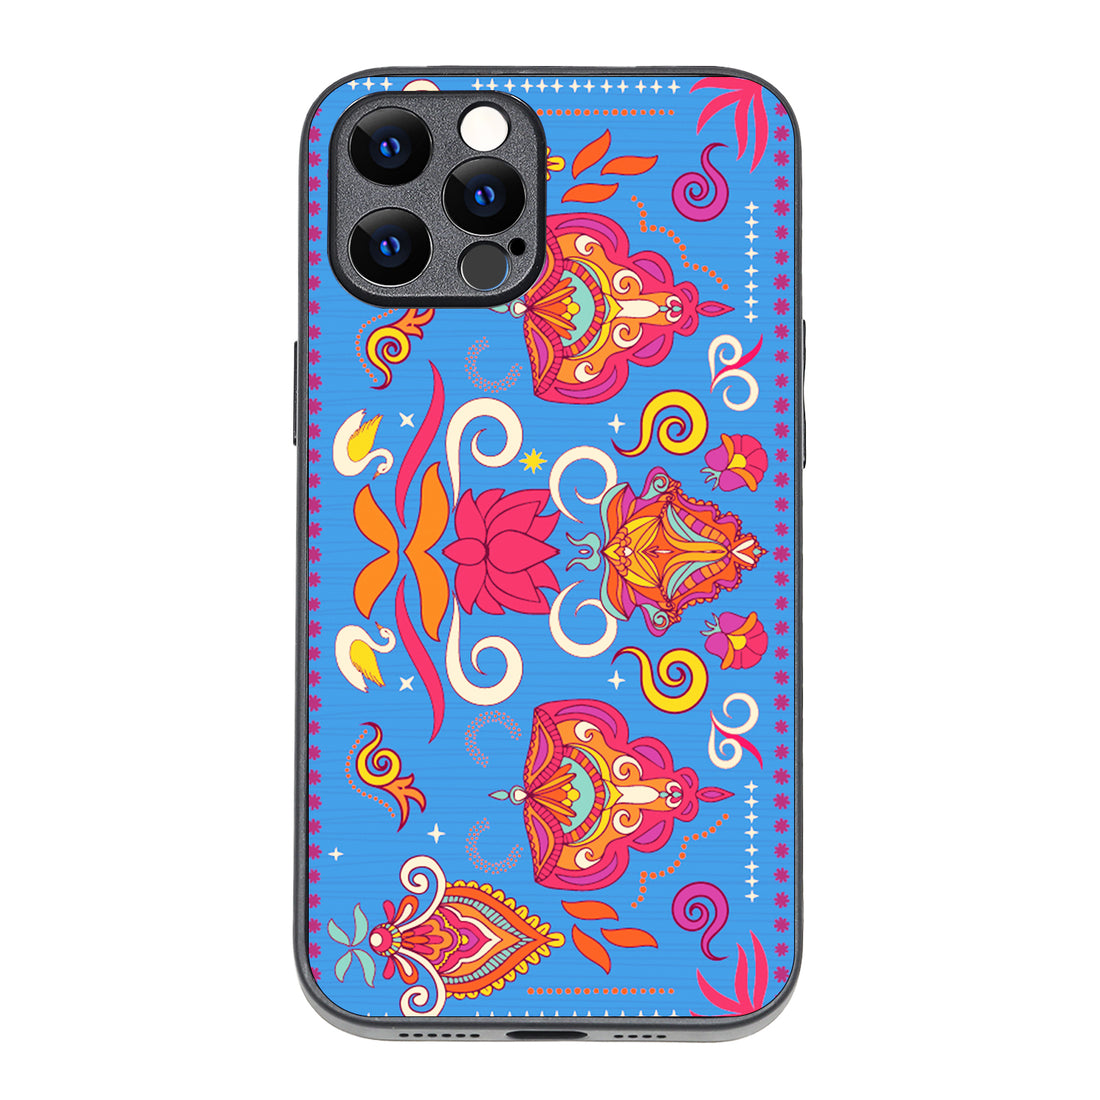 Spiritual Design iPhone 12 Pro Max Case